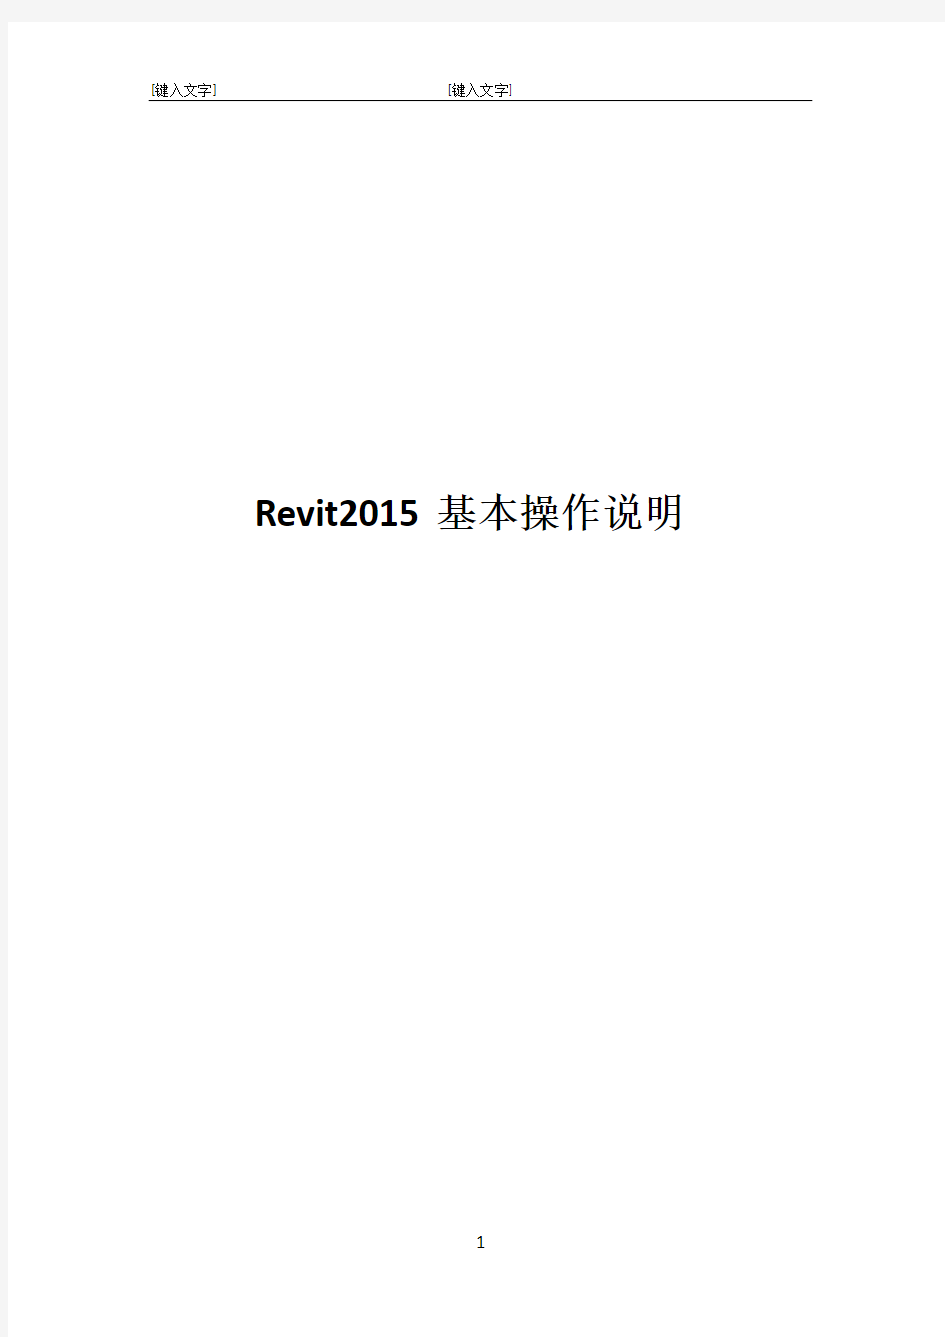 Revit2015基本操作说明